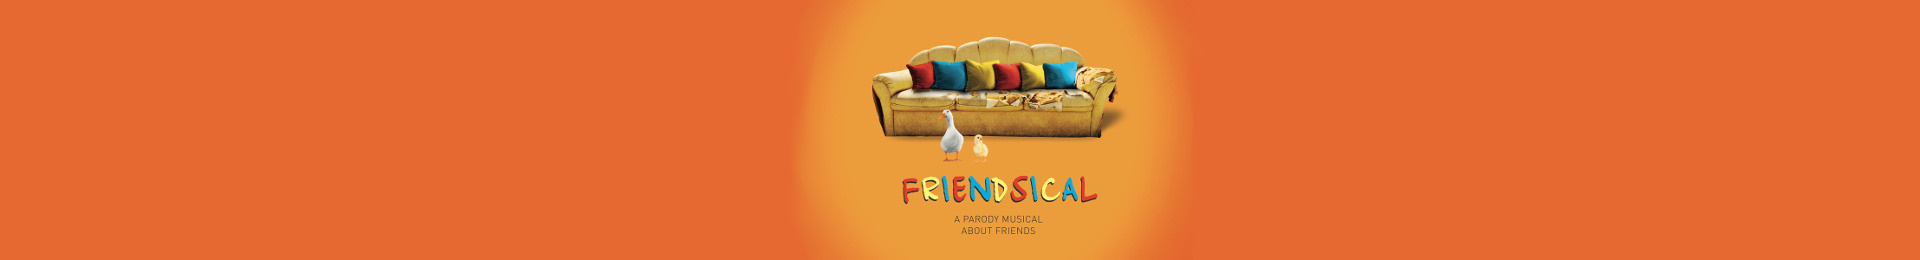 Friendsical banner image